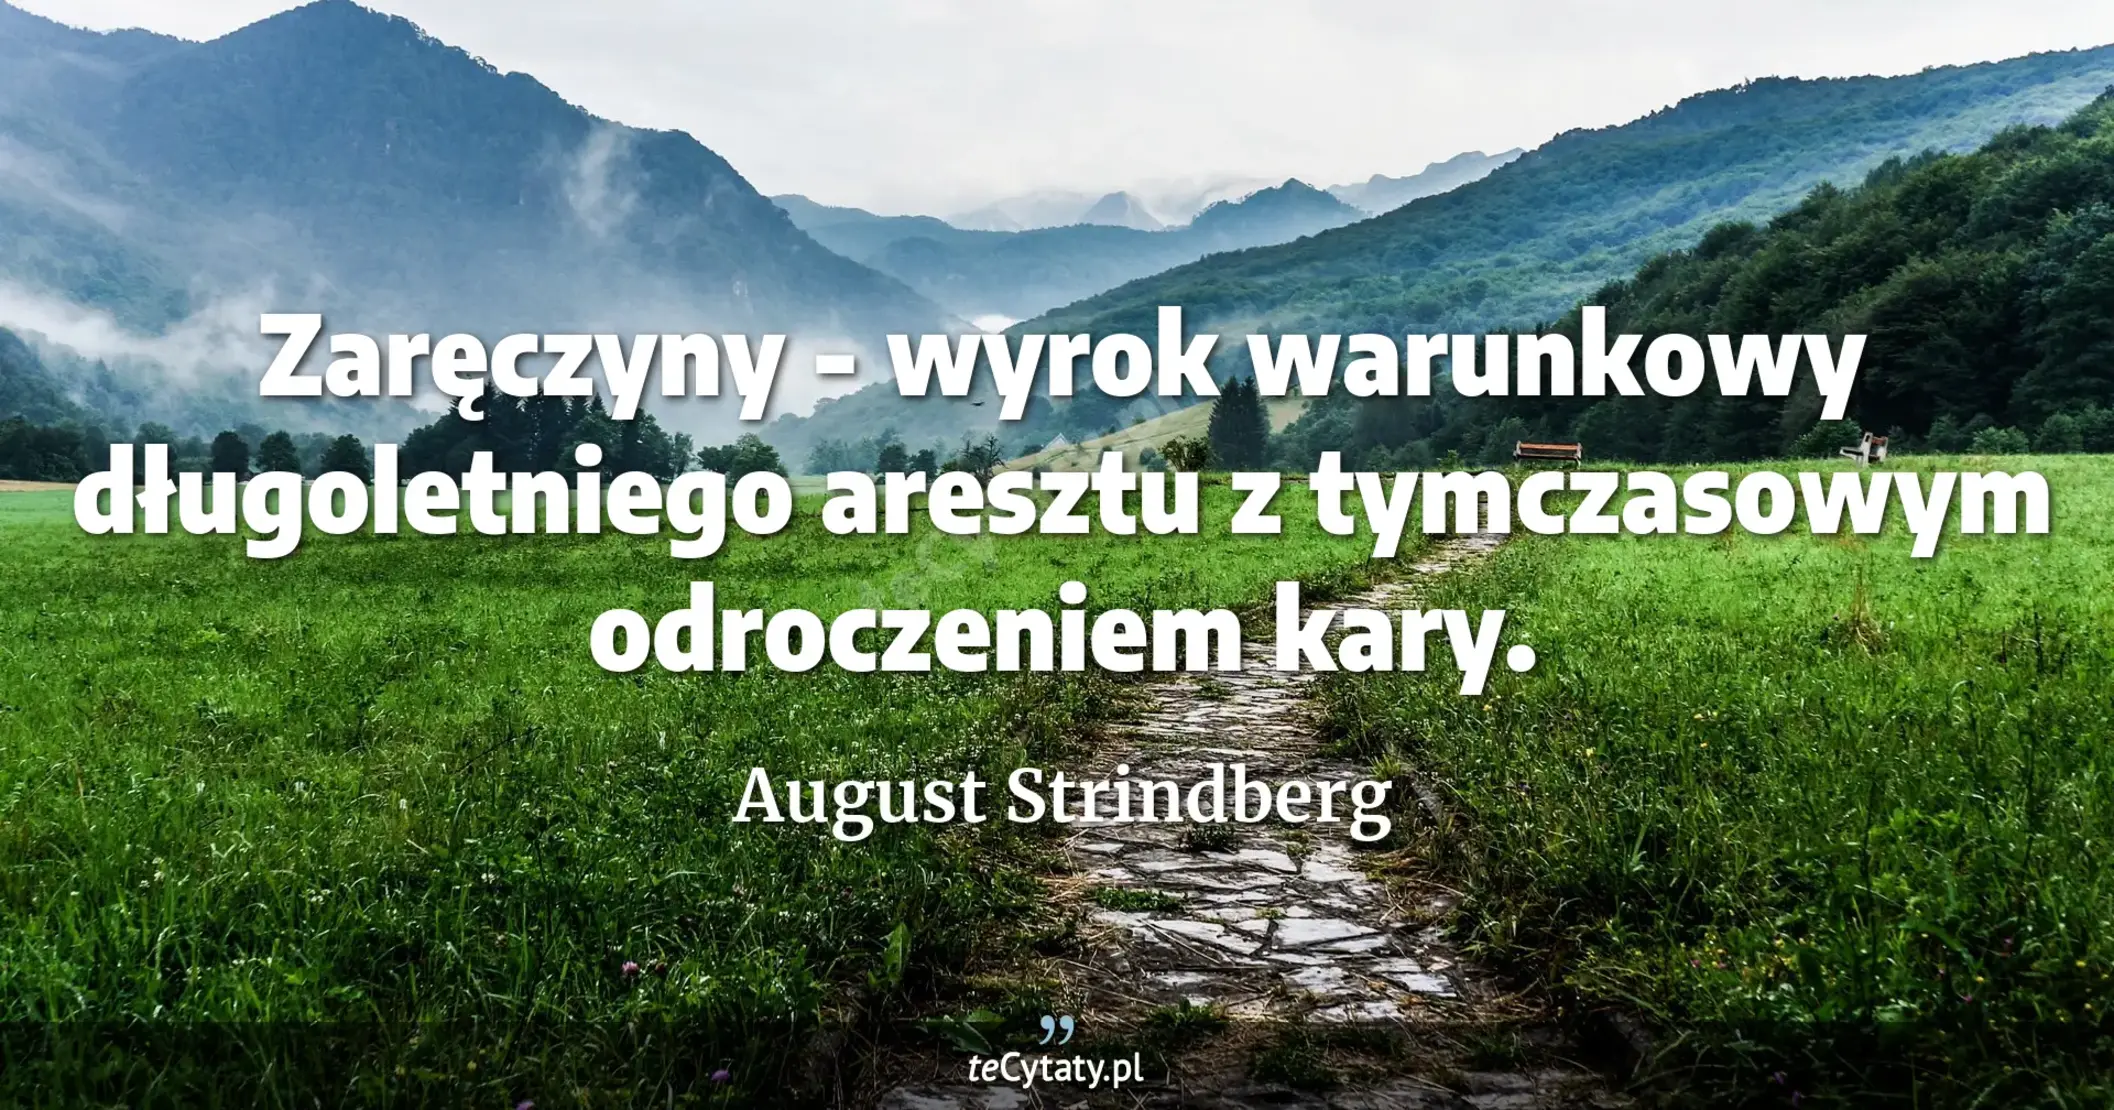 Zaręczyny - wyrok warunkowy długoletniego aresztu z tymczasowym odroczeniem kary. - August Strindberg